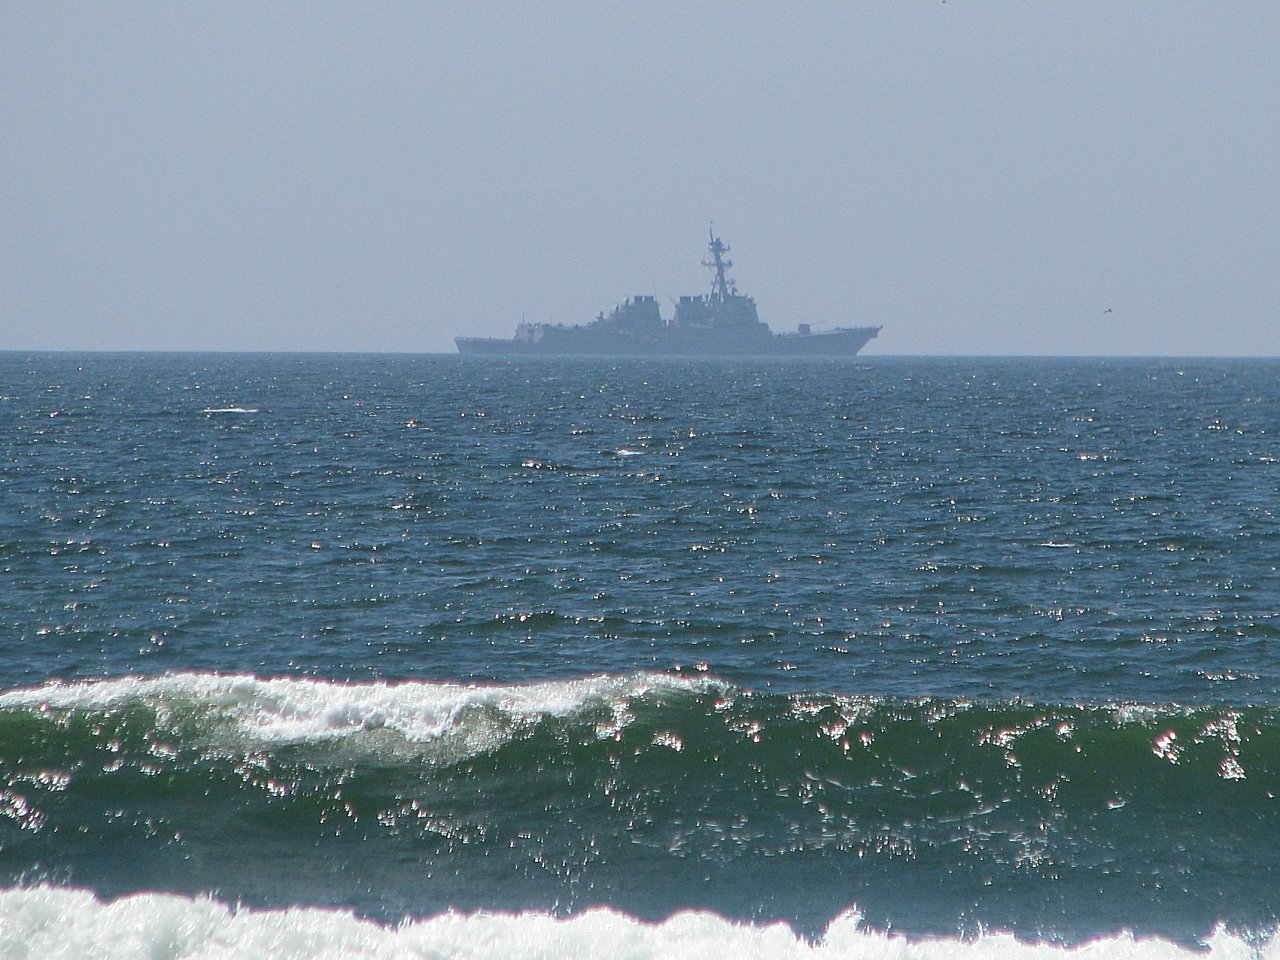 Coronado Island Naval Base